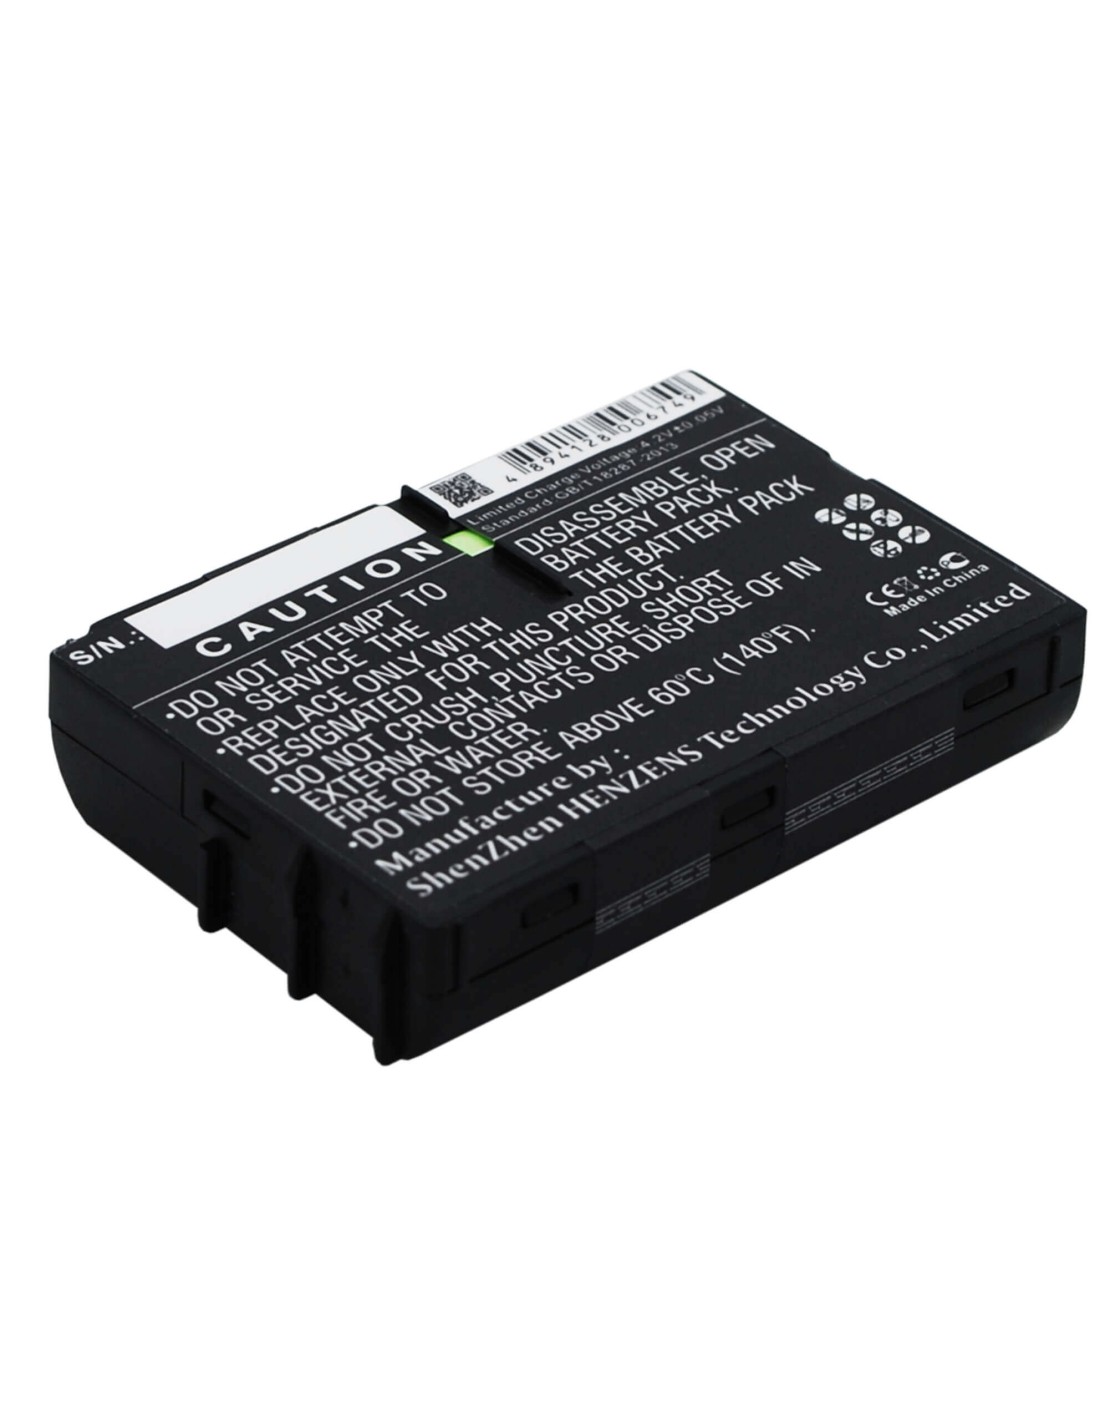 Battery for Siemens C25, C2588, C25e 3.6V, 700mAh - 2.52Wh